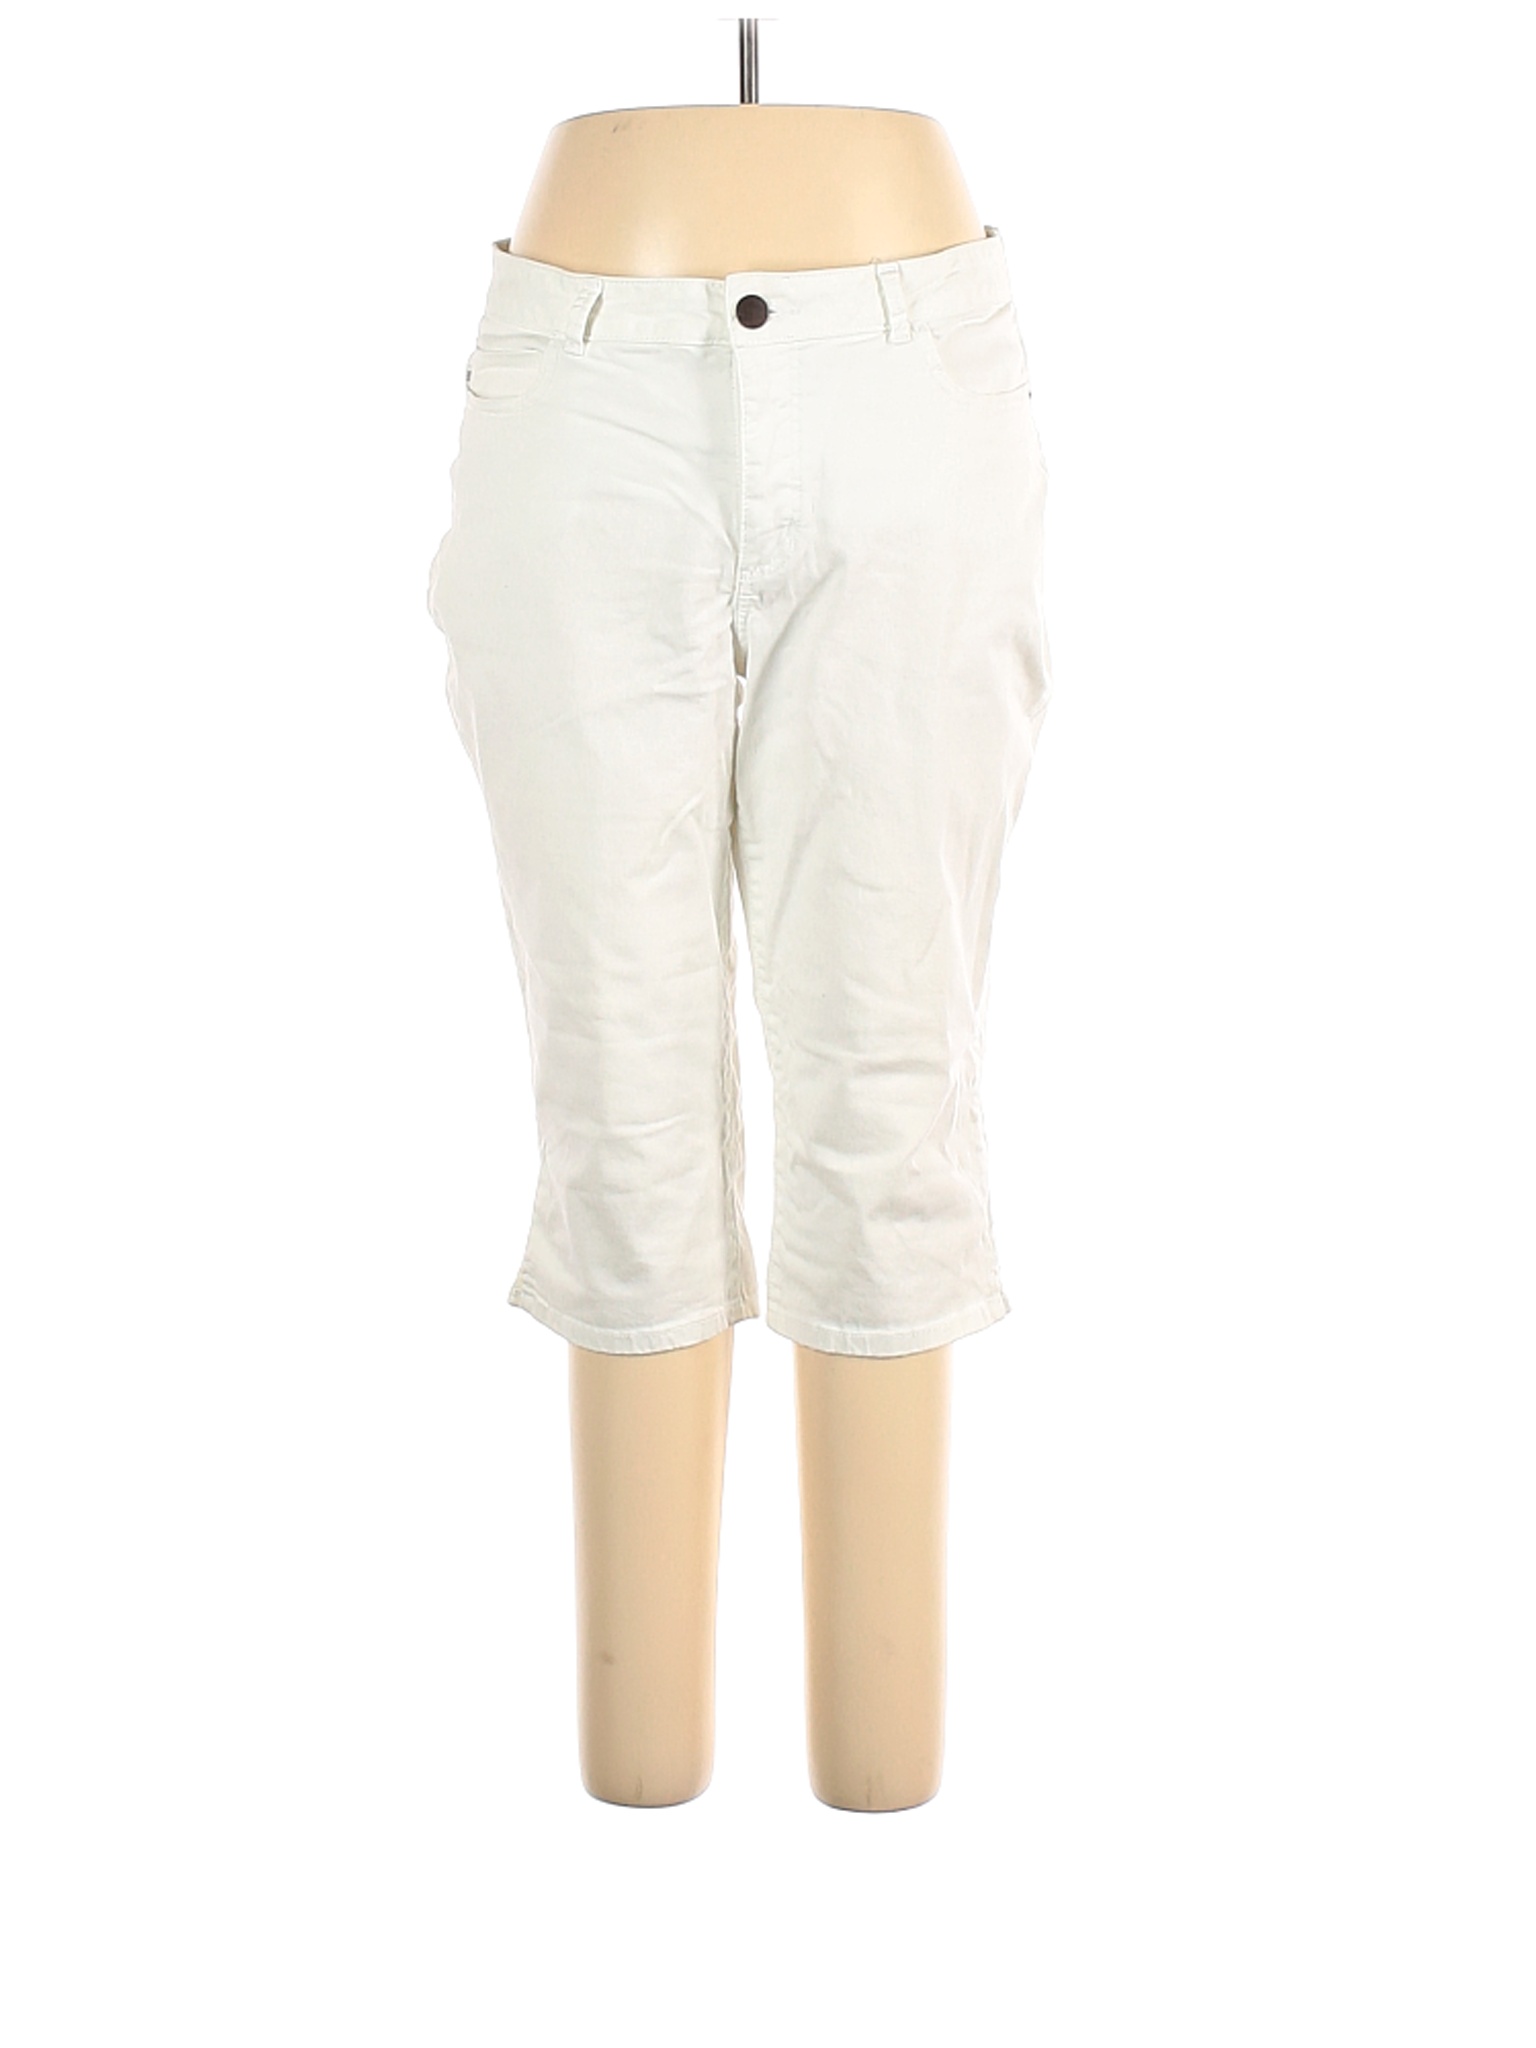 Lee Women White Jeans 16 | eBay